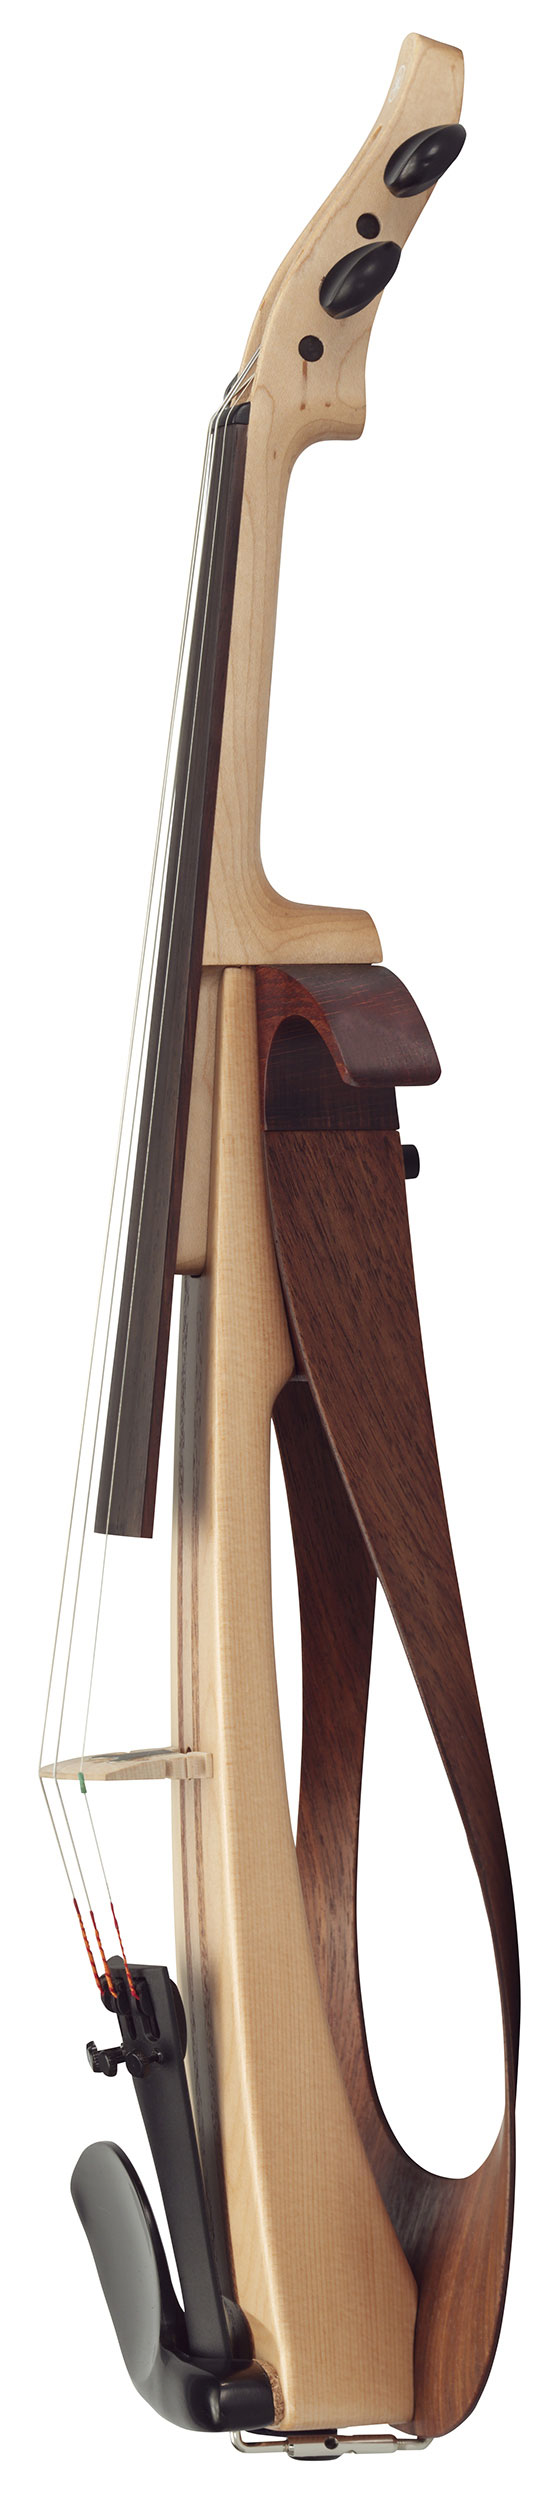 YEV-104 NT Elektrische Violine